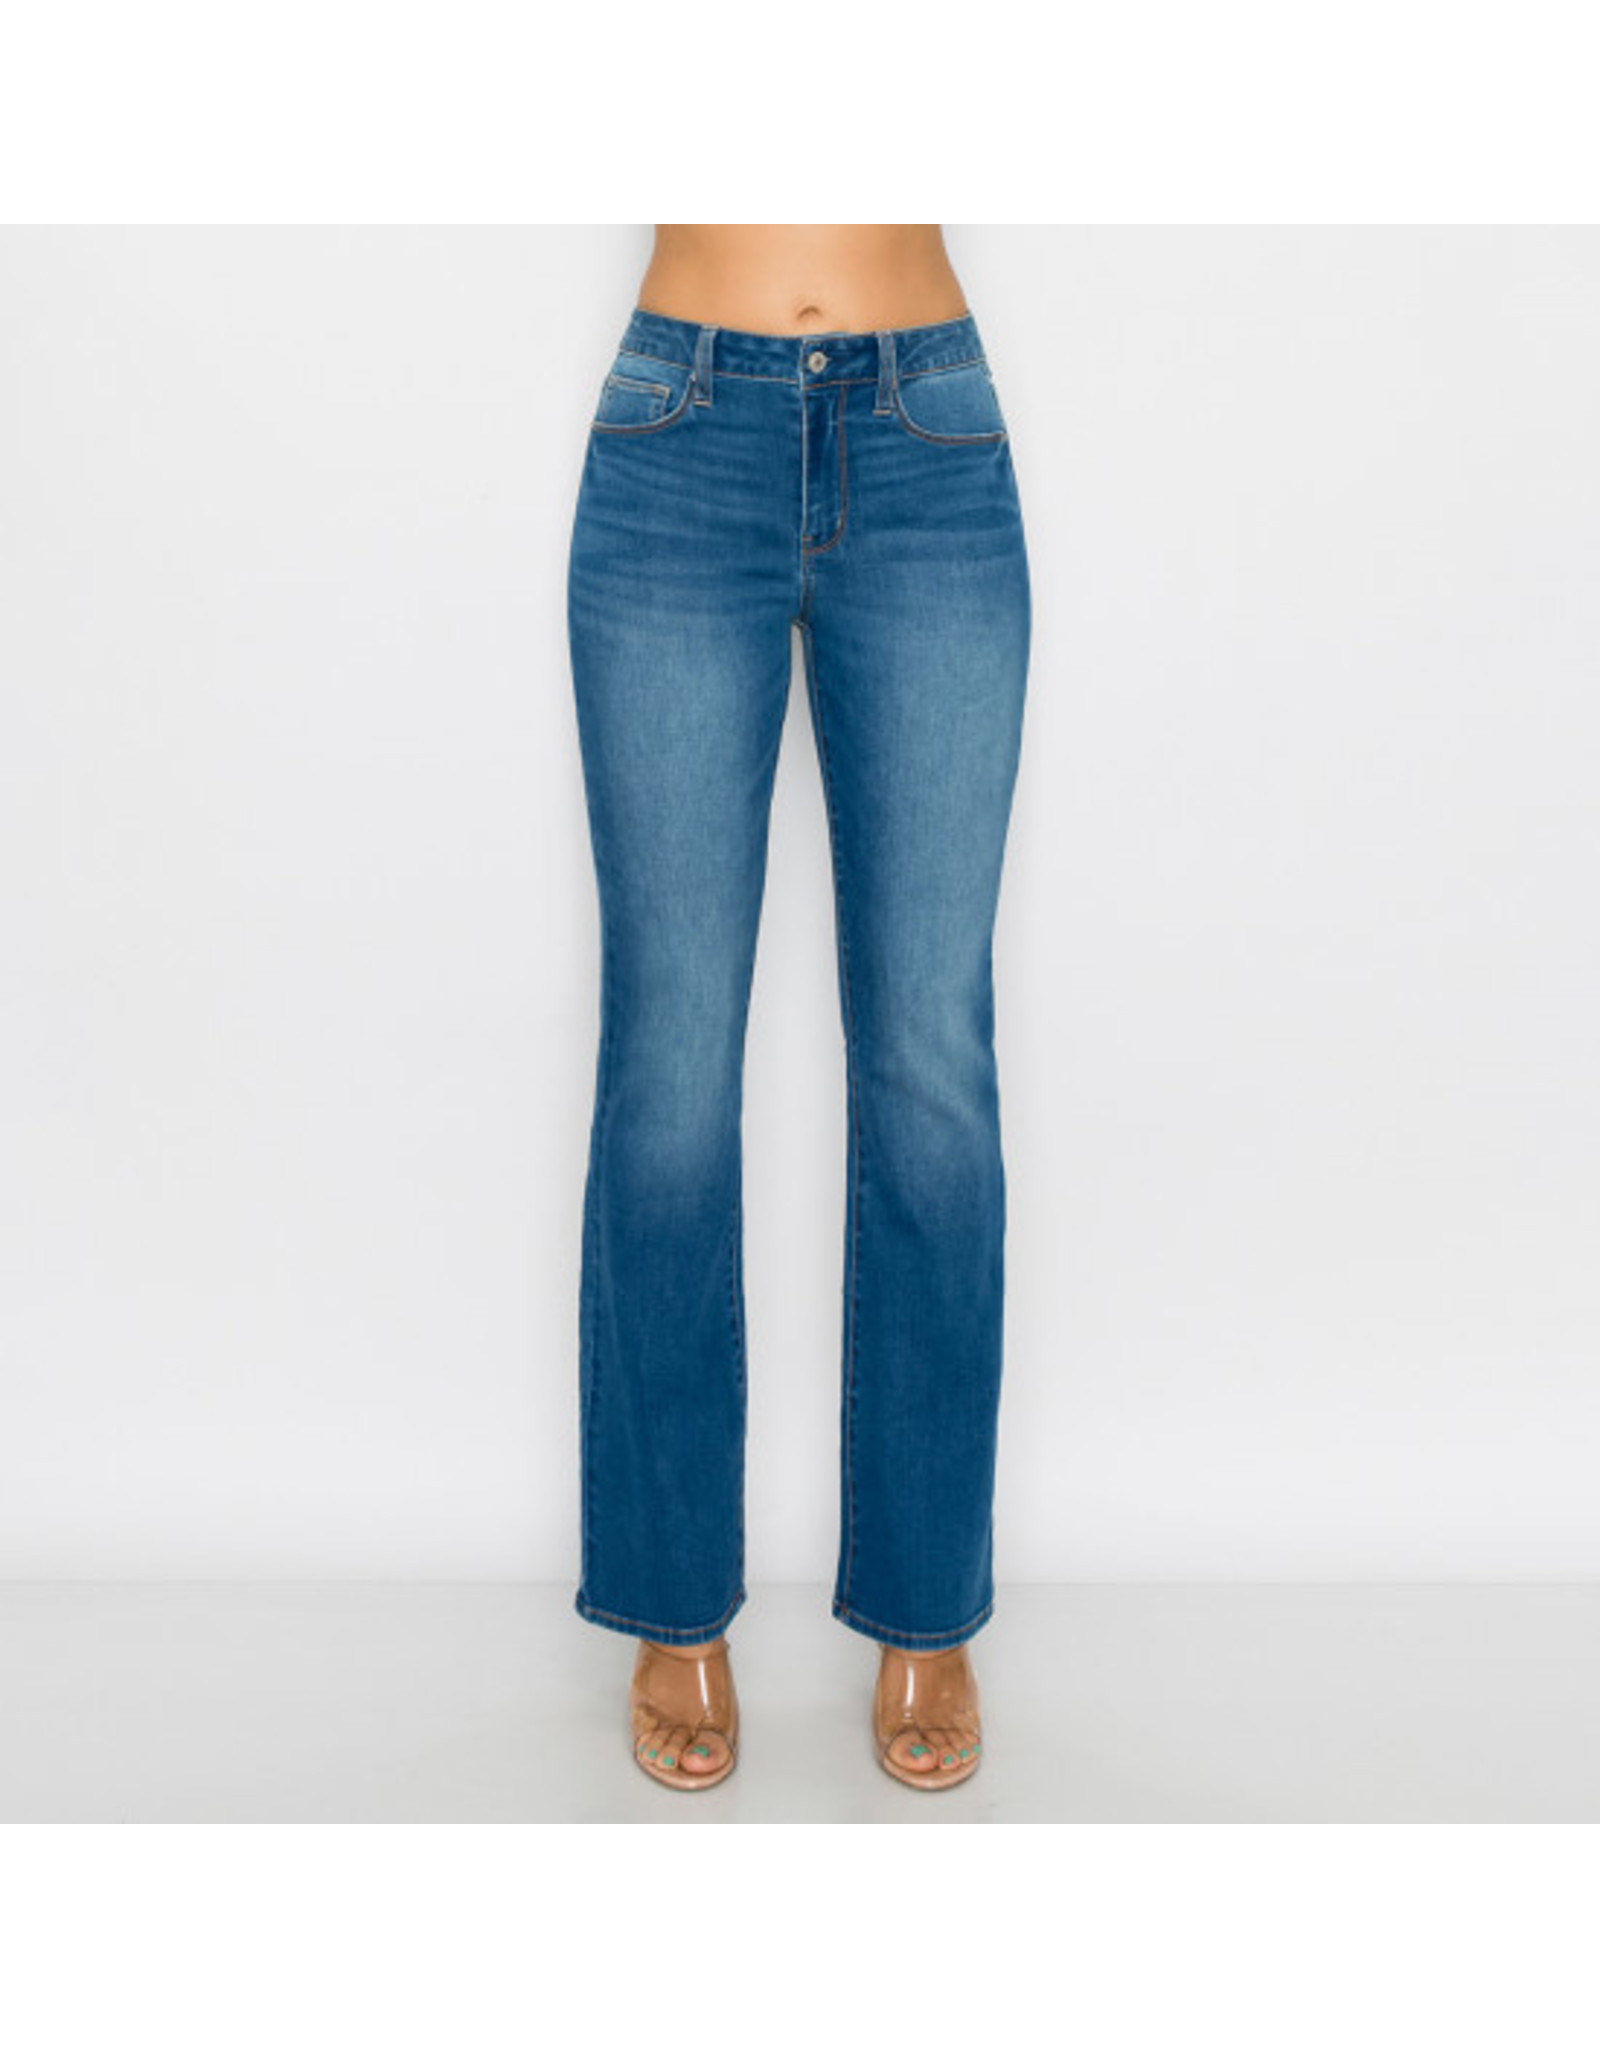 Wax Jeans - Women Bootcut Wax Jeans Style- 90248